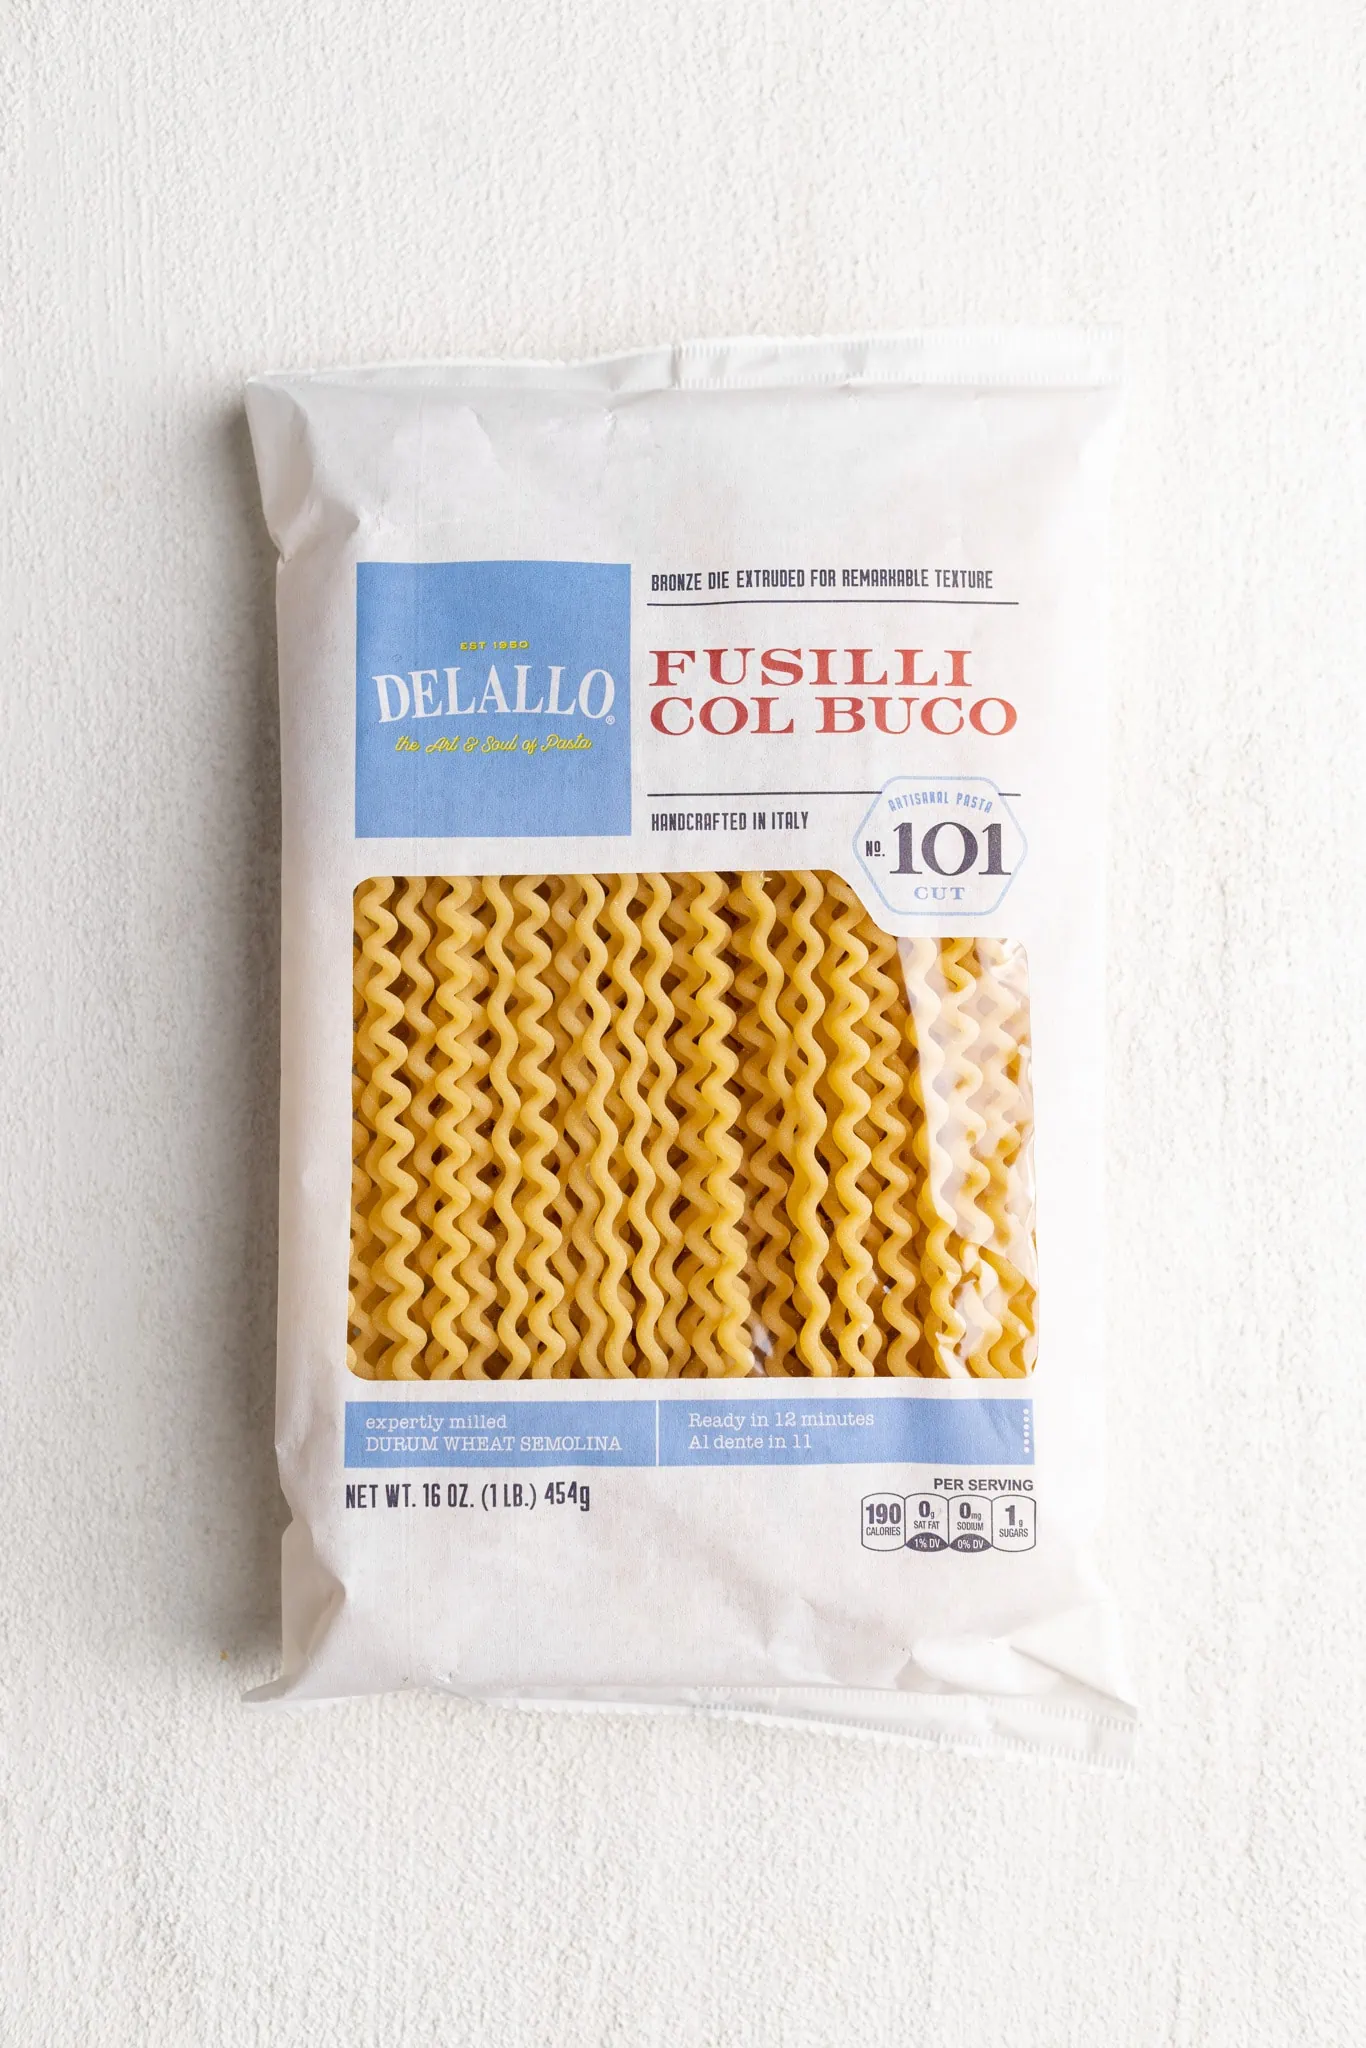 DeLallo's Fusilli Col Buco in packaging